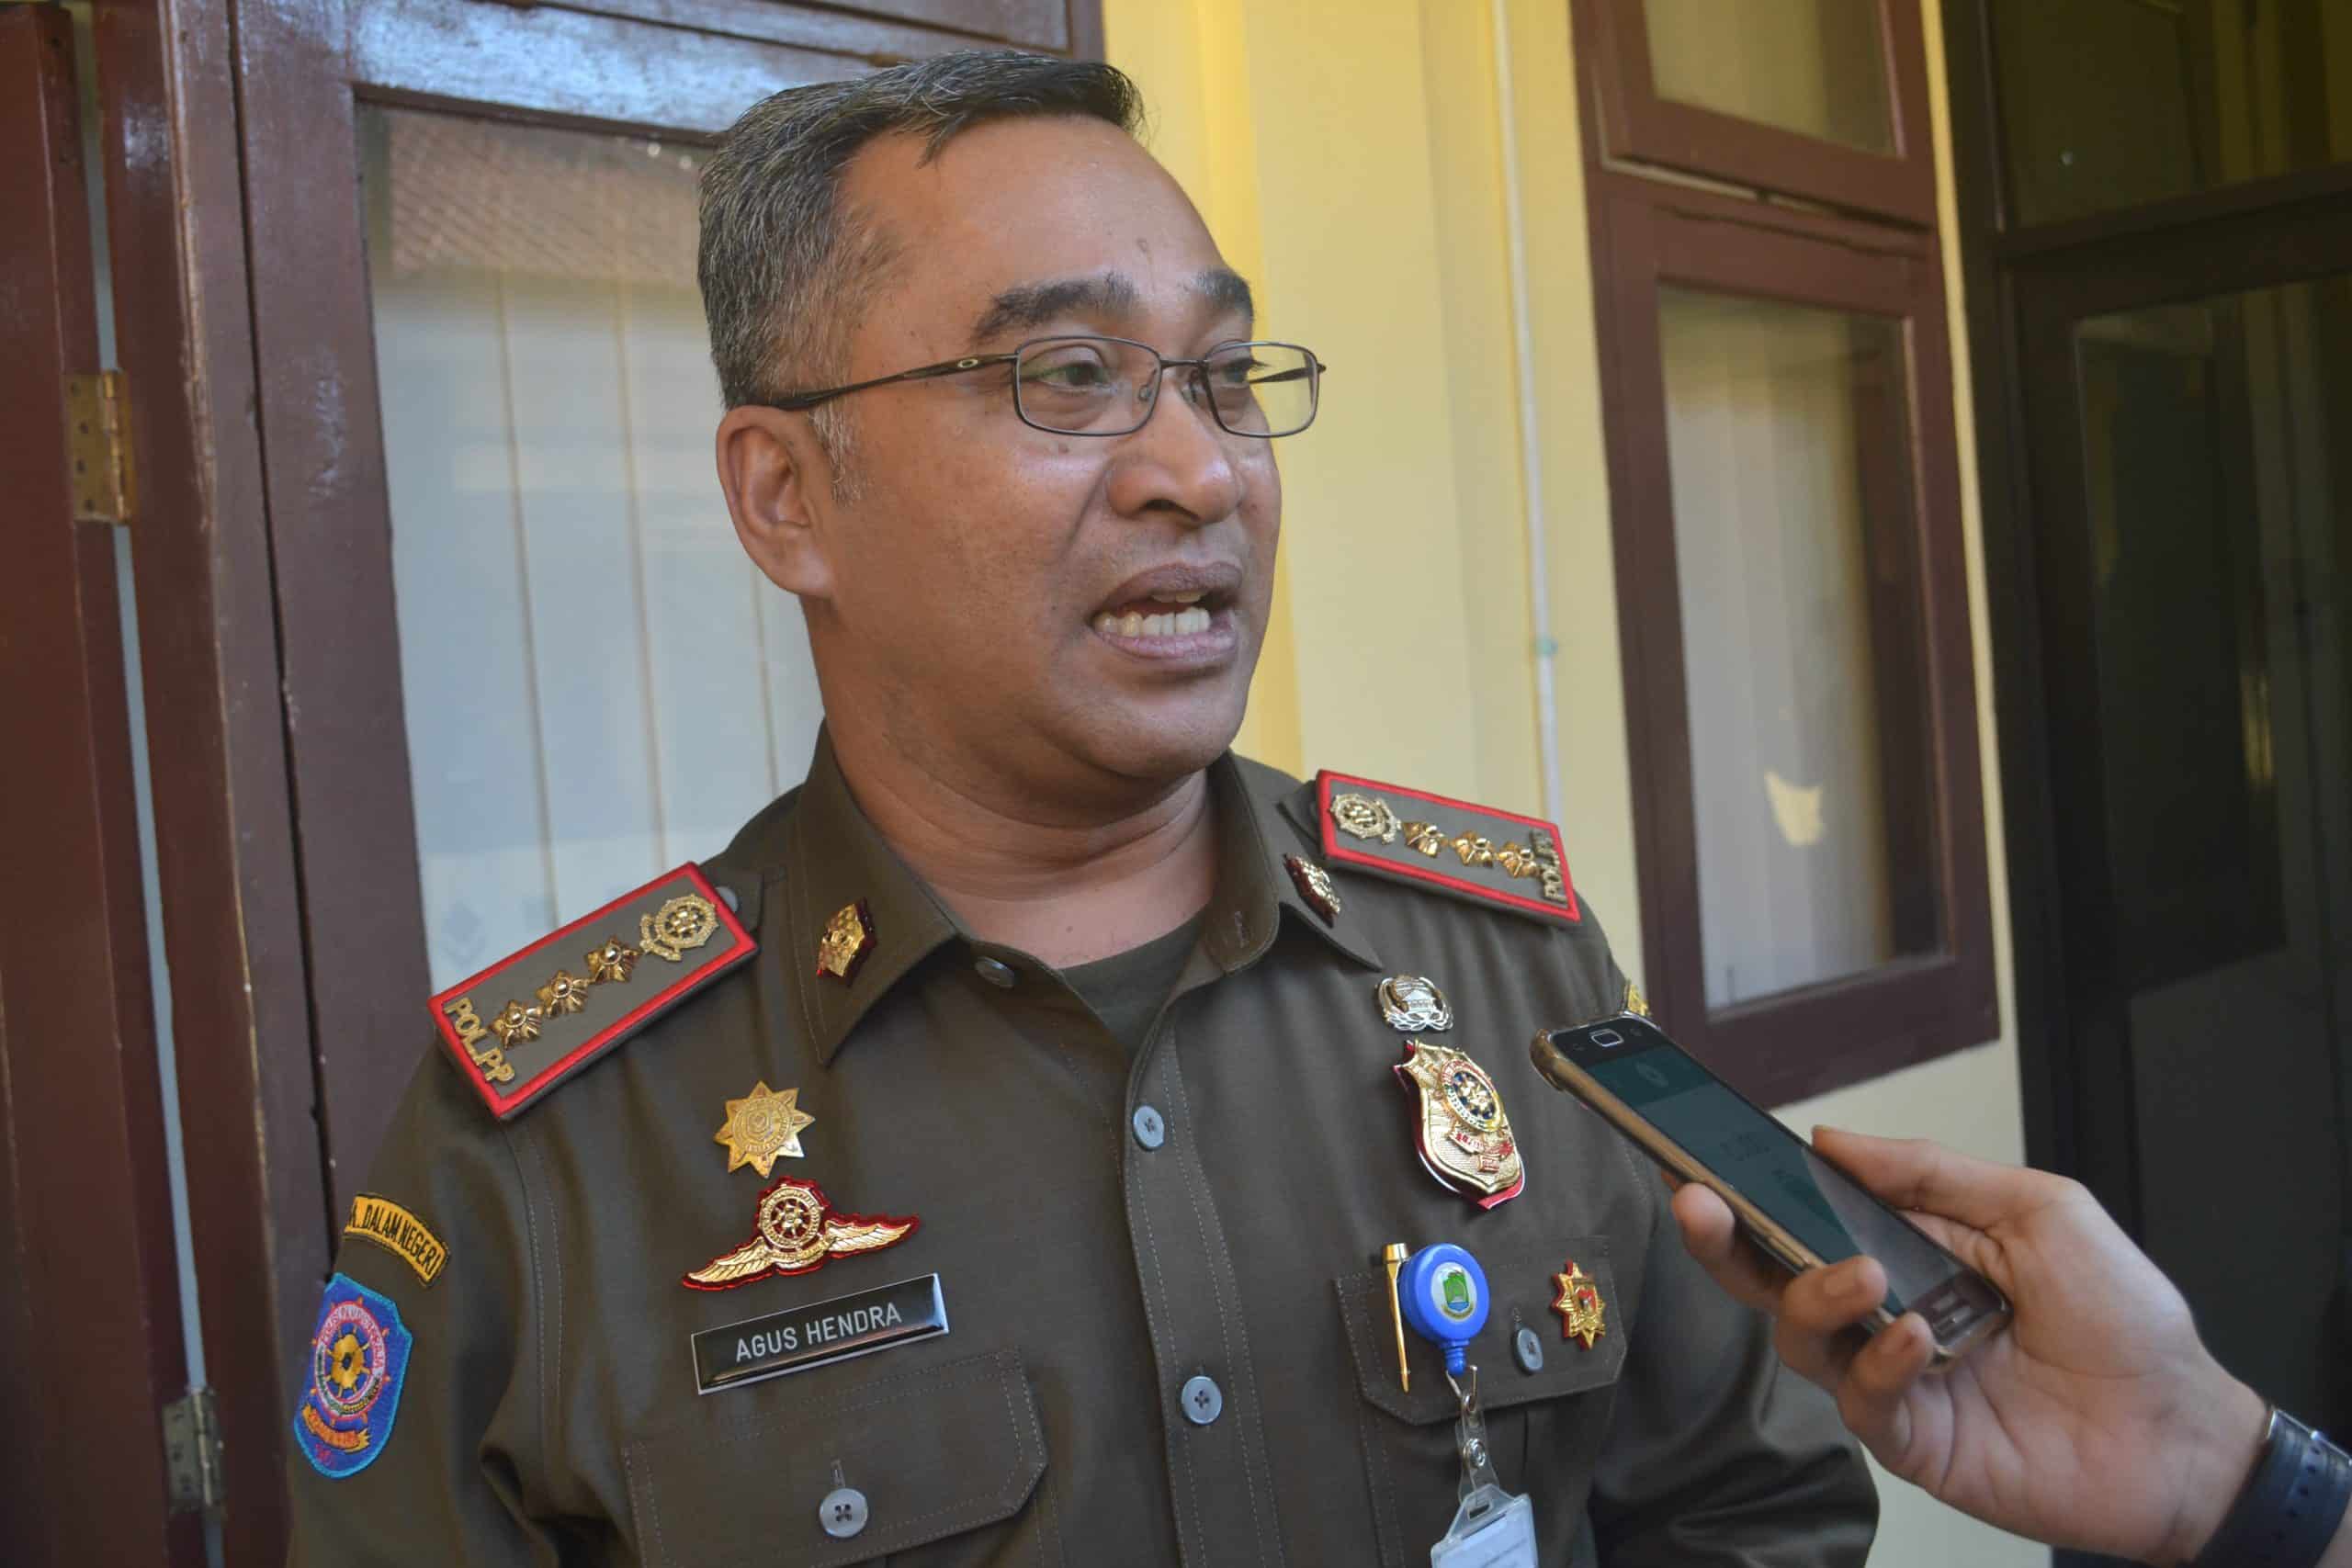 Pol PP Kota Tangerang Amankan Pasangan Sedang Berselingkuh di Hotel